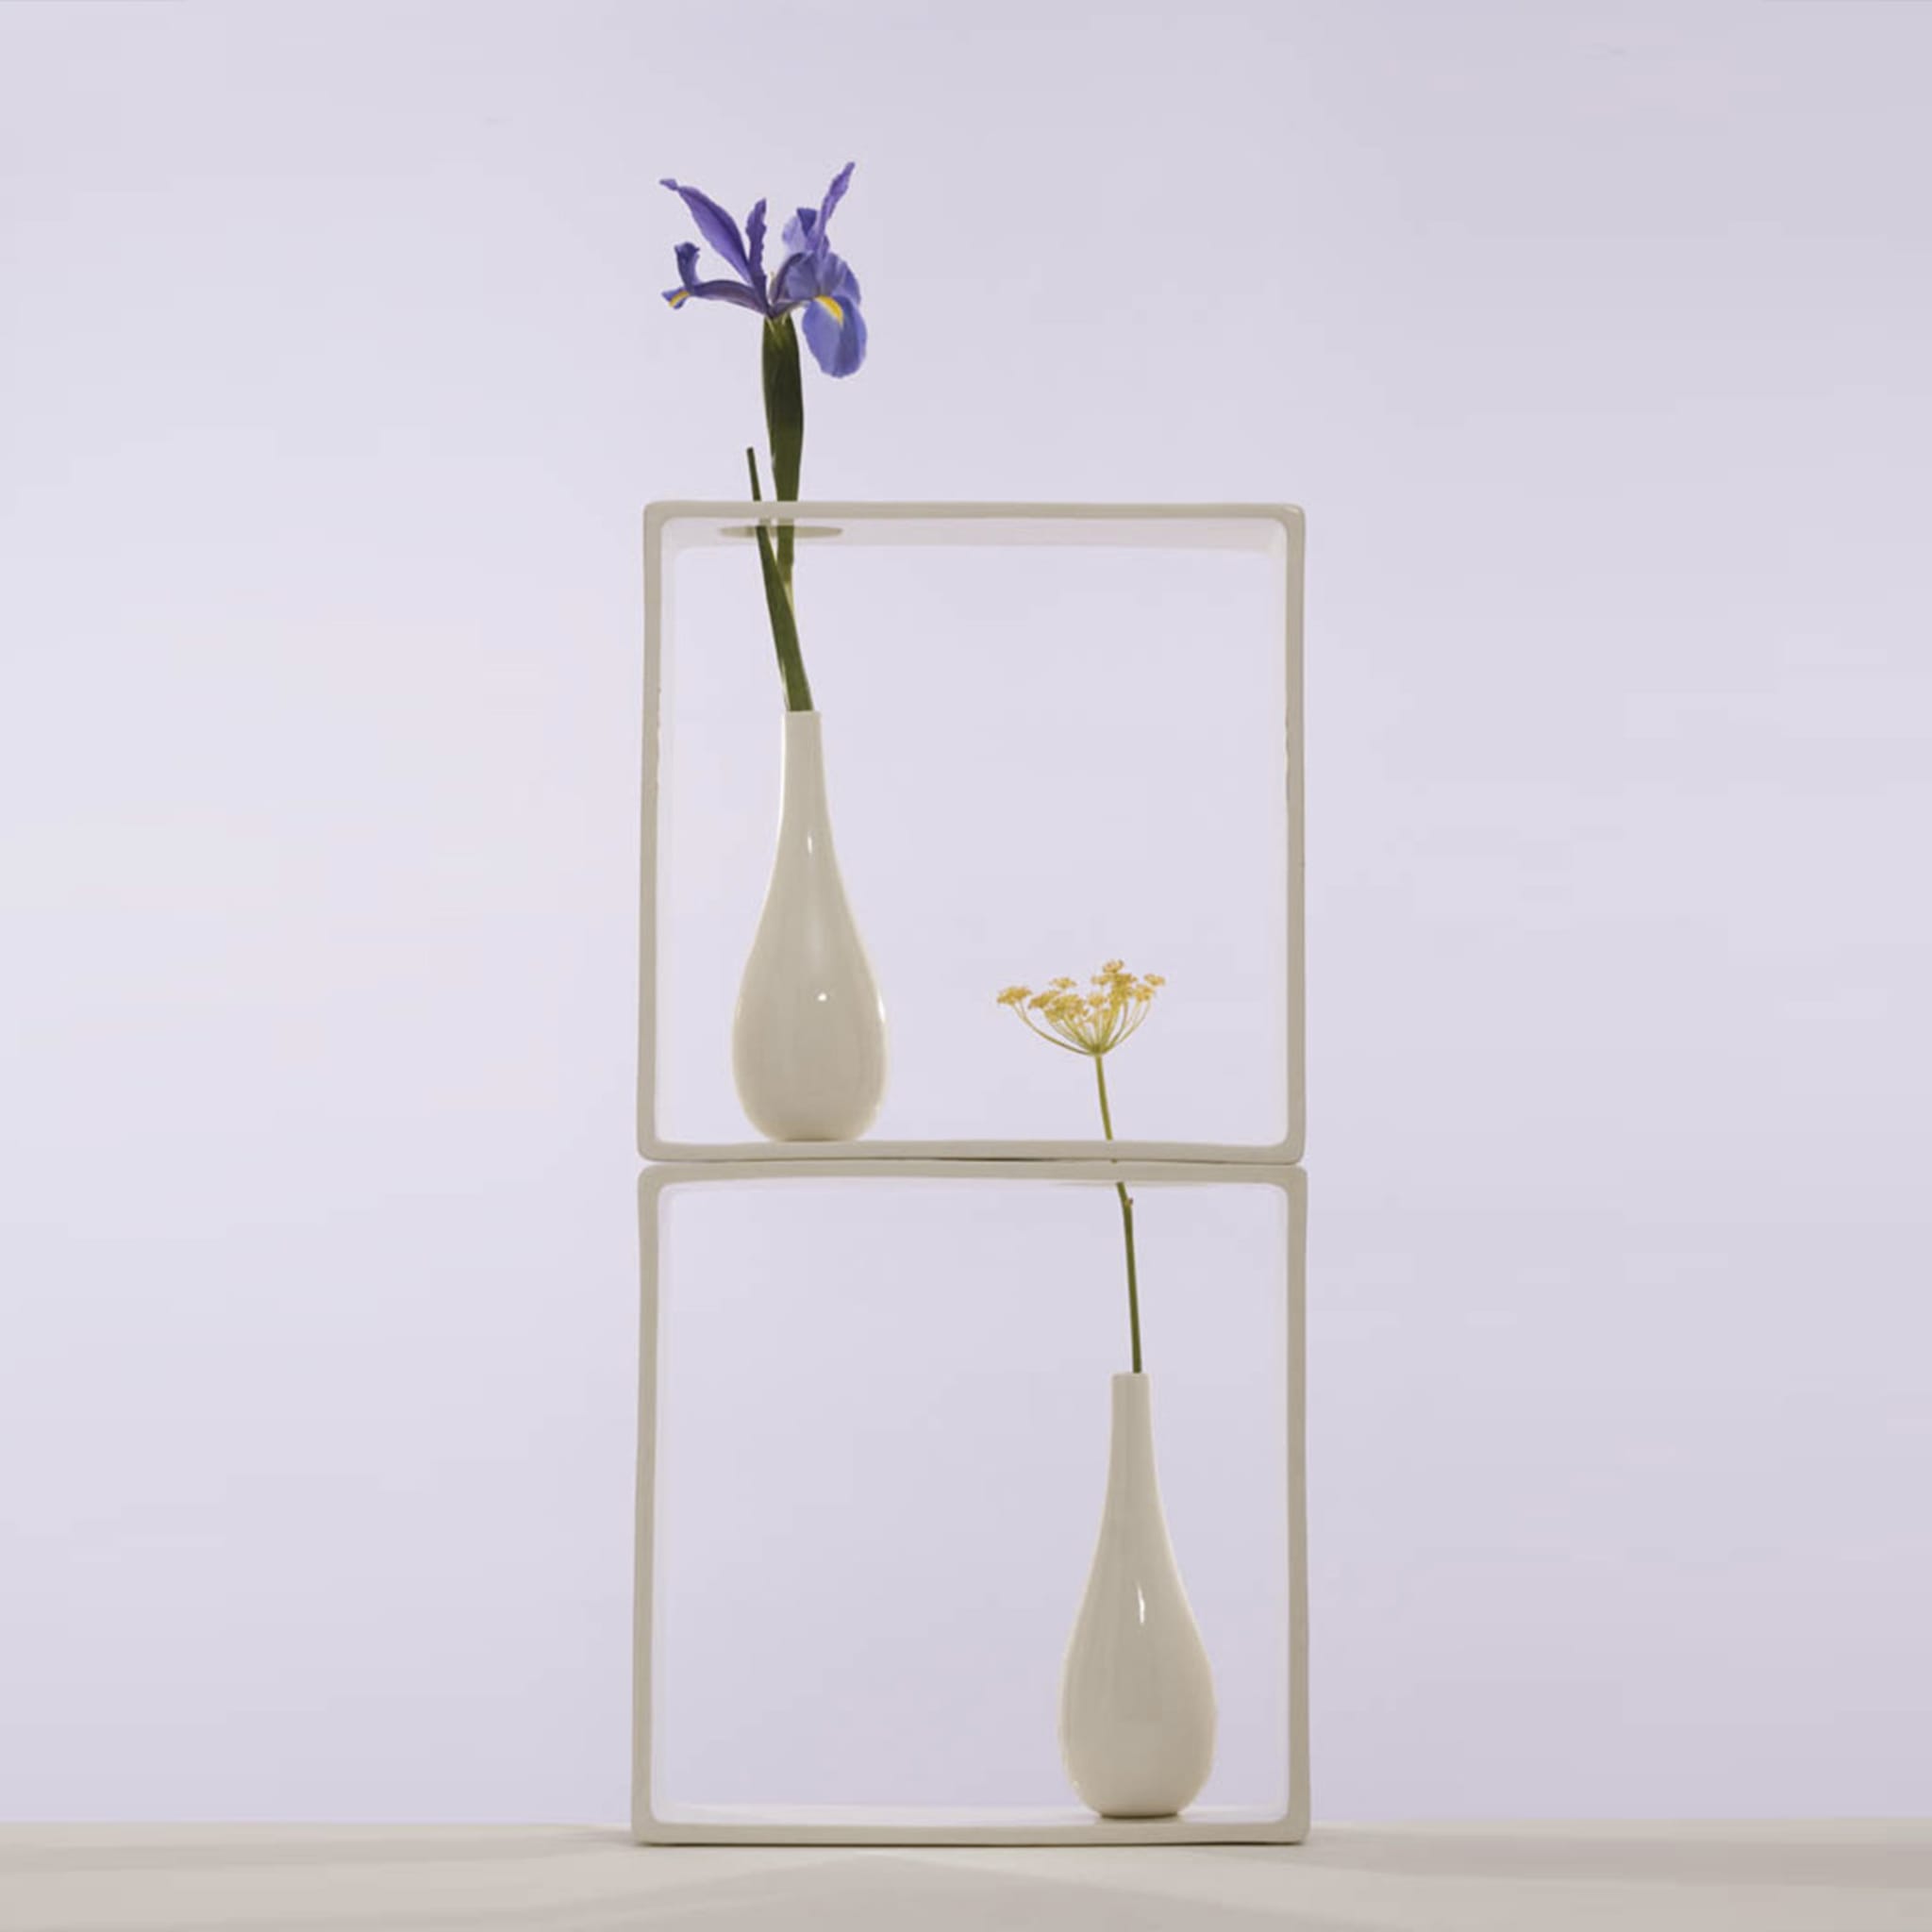 Portali 5 Vase by Andrea Branzi - Alternative view 1